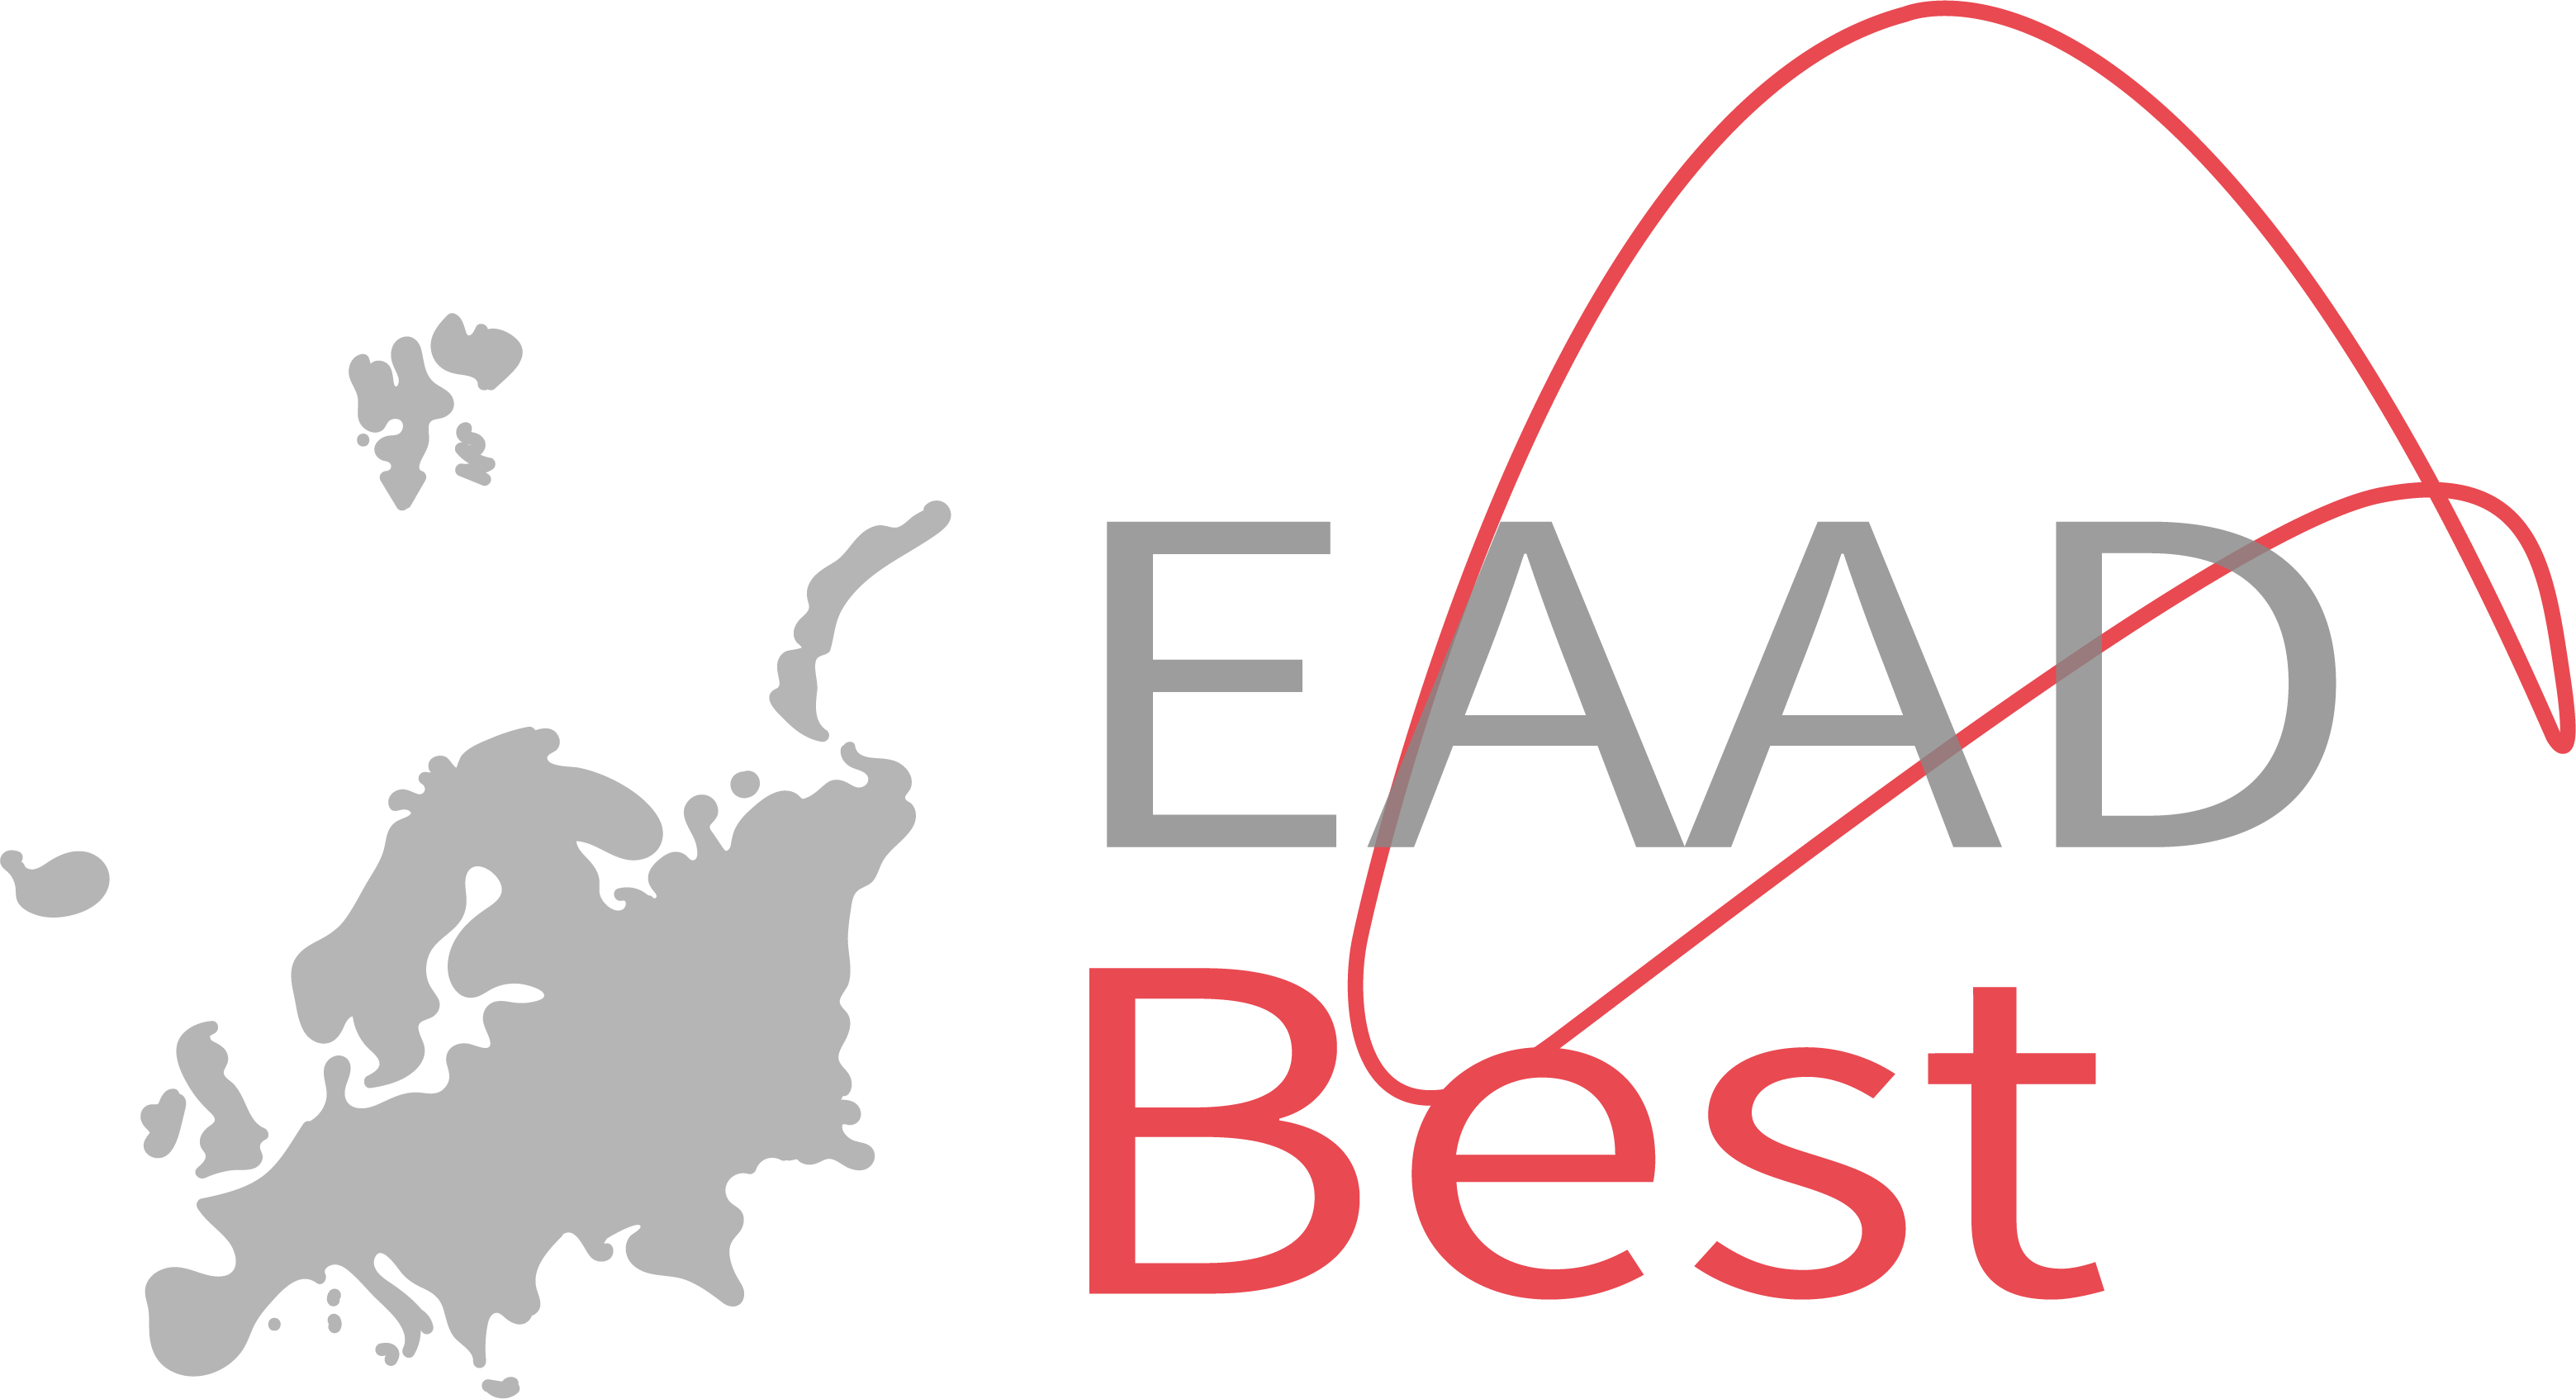 eaad-best_logo